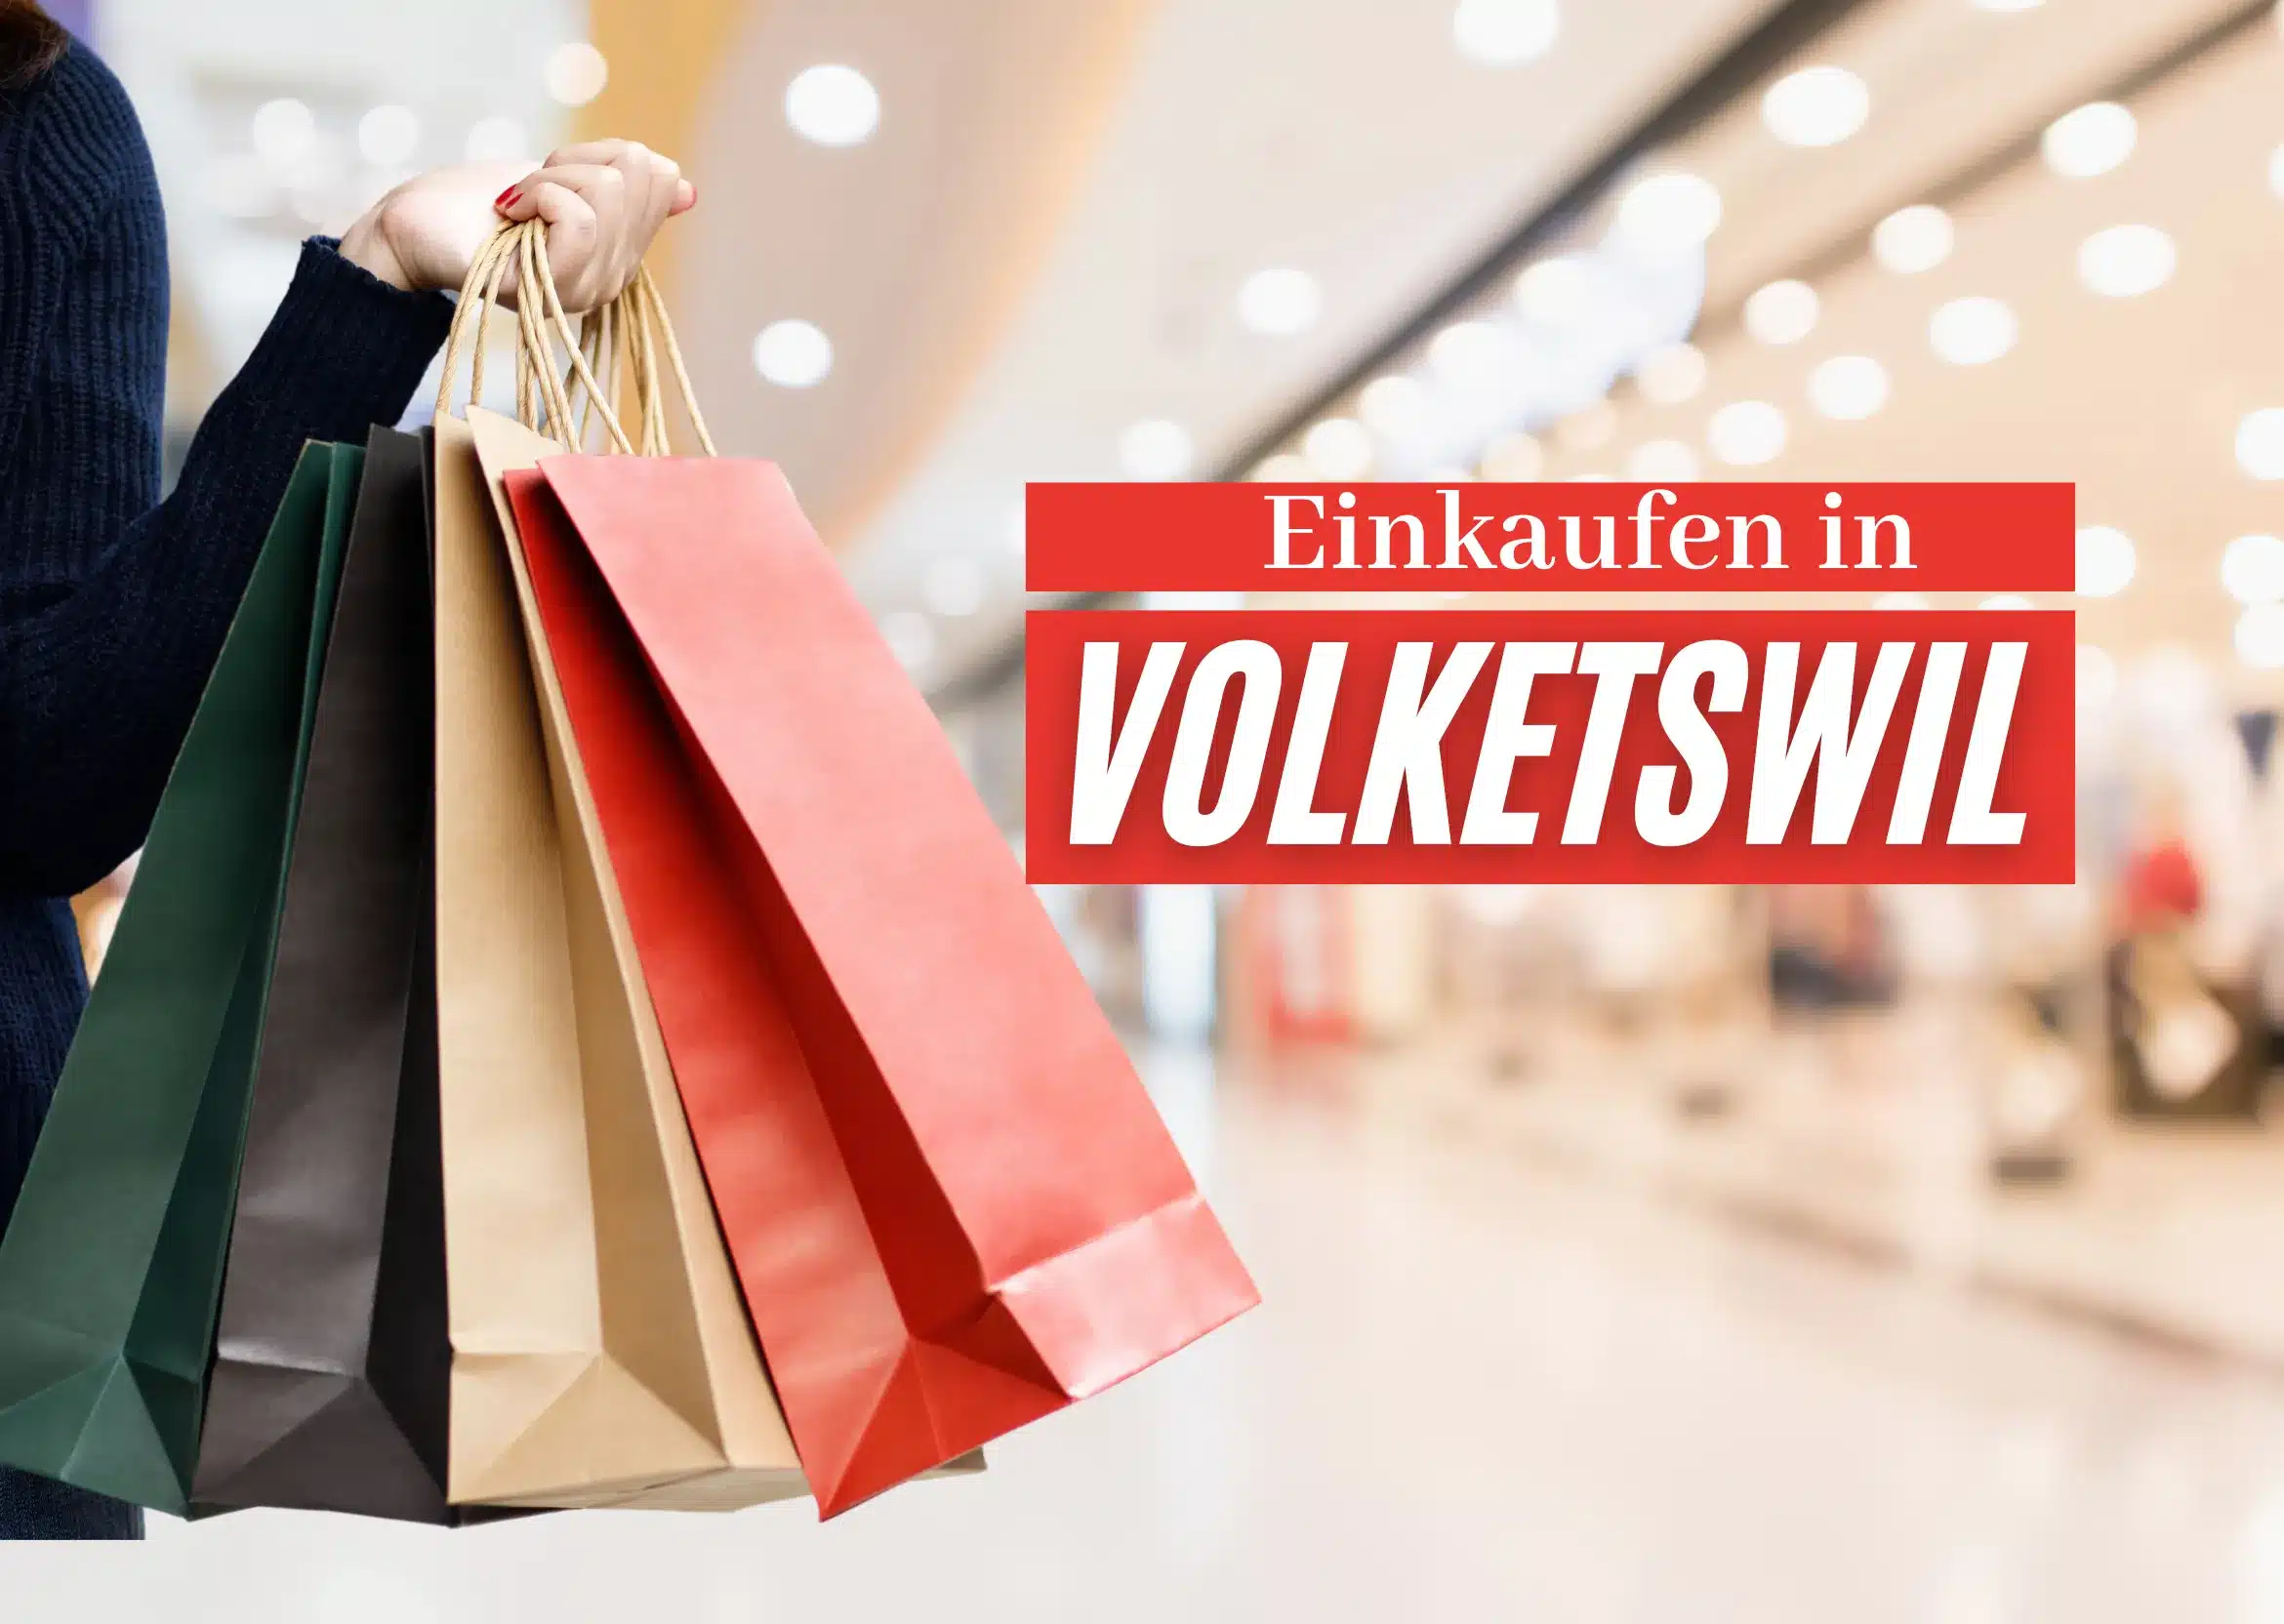 Einkaufen in Volketswil: Die Modefreuden in der Nähe von Supermärkten